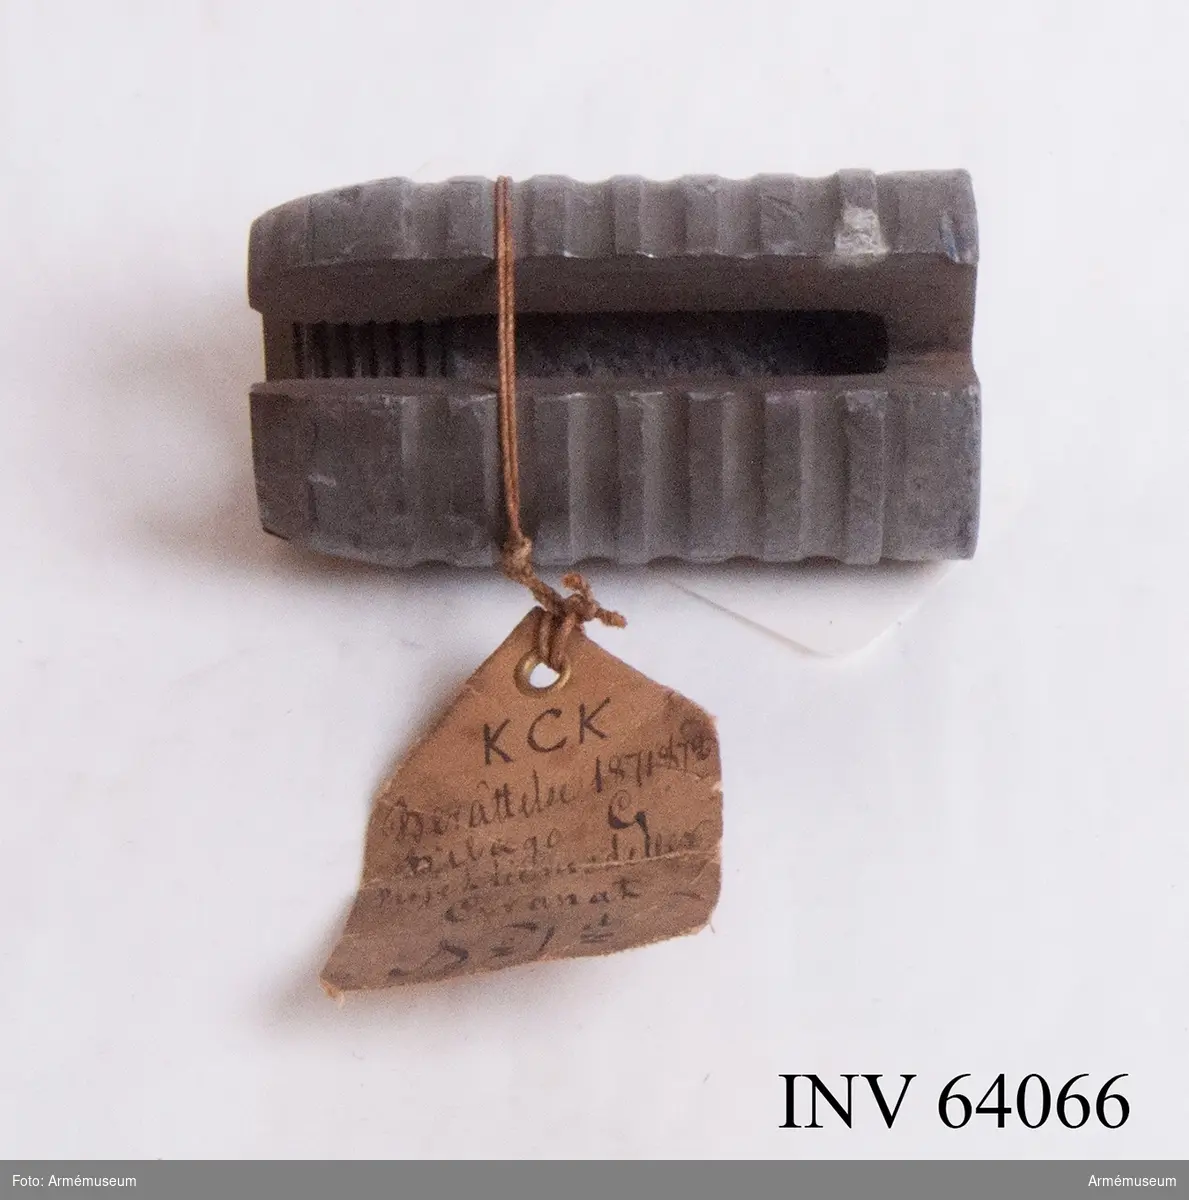 Grupp F II.

Genomskuren granat. Projekt 1868. Granat av tackjärn med två valkar på järnkärnan och med blymantel. Första konstruktionen.